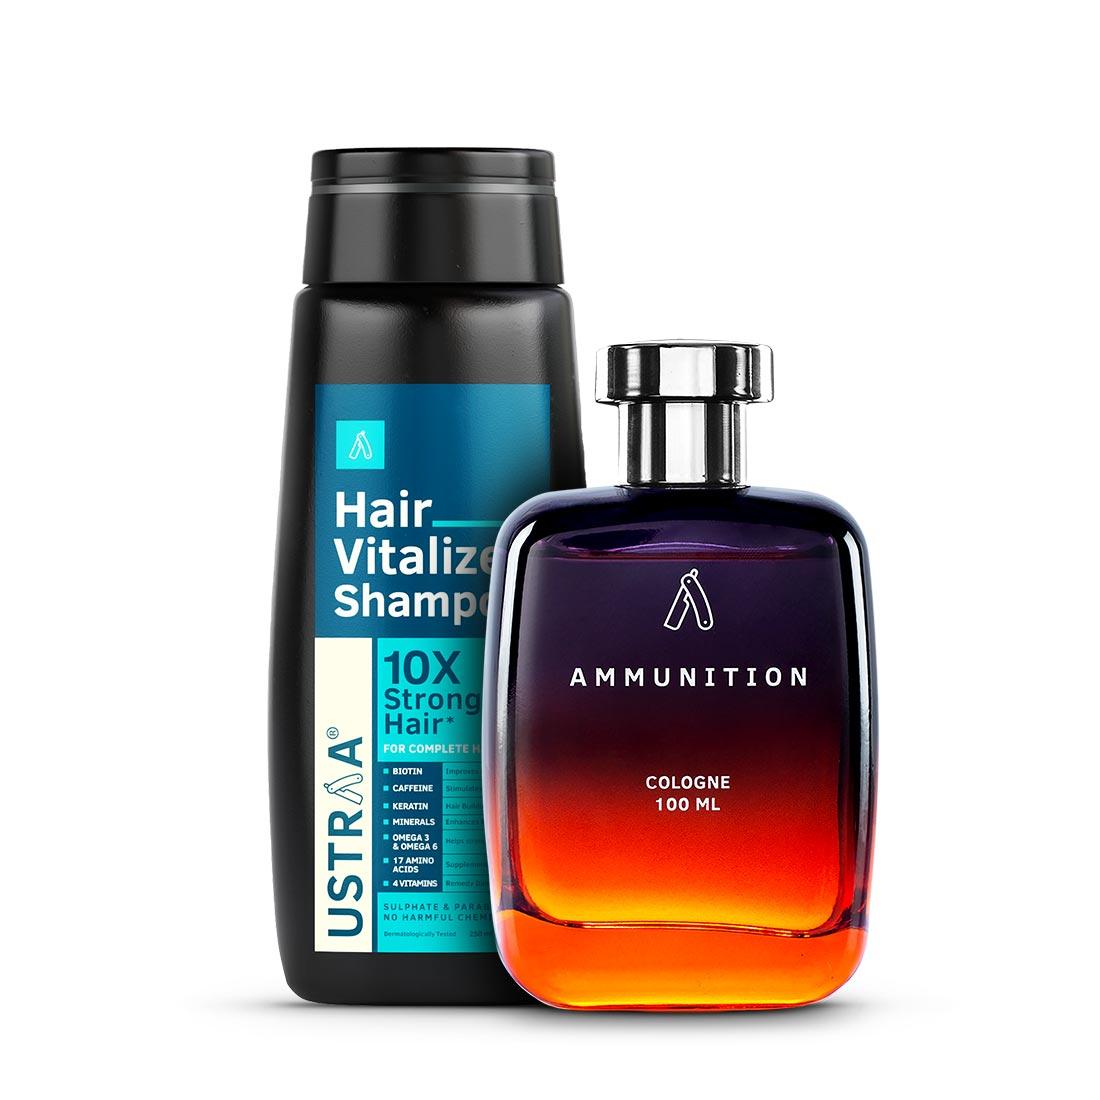 Hair Vitalizer Shampoo & Cologne Ammunition